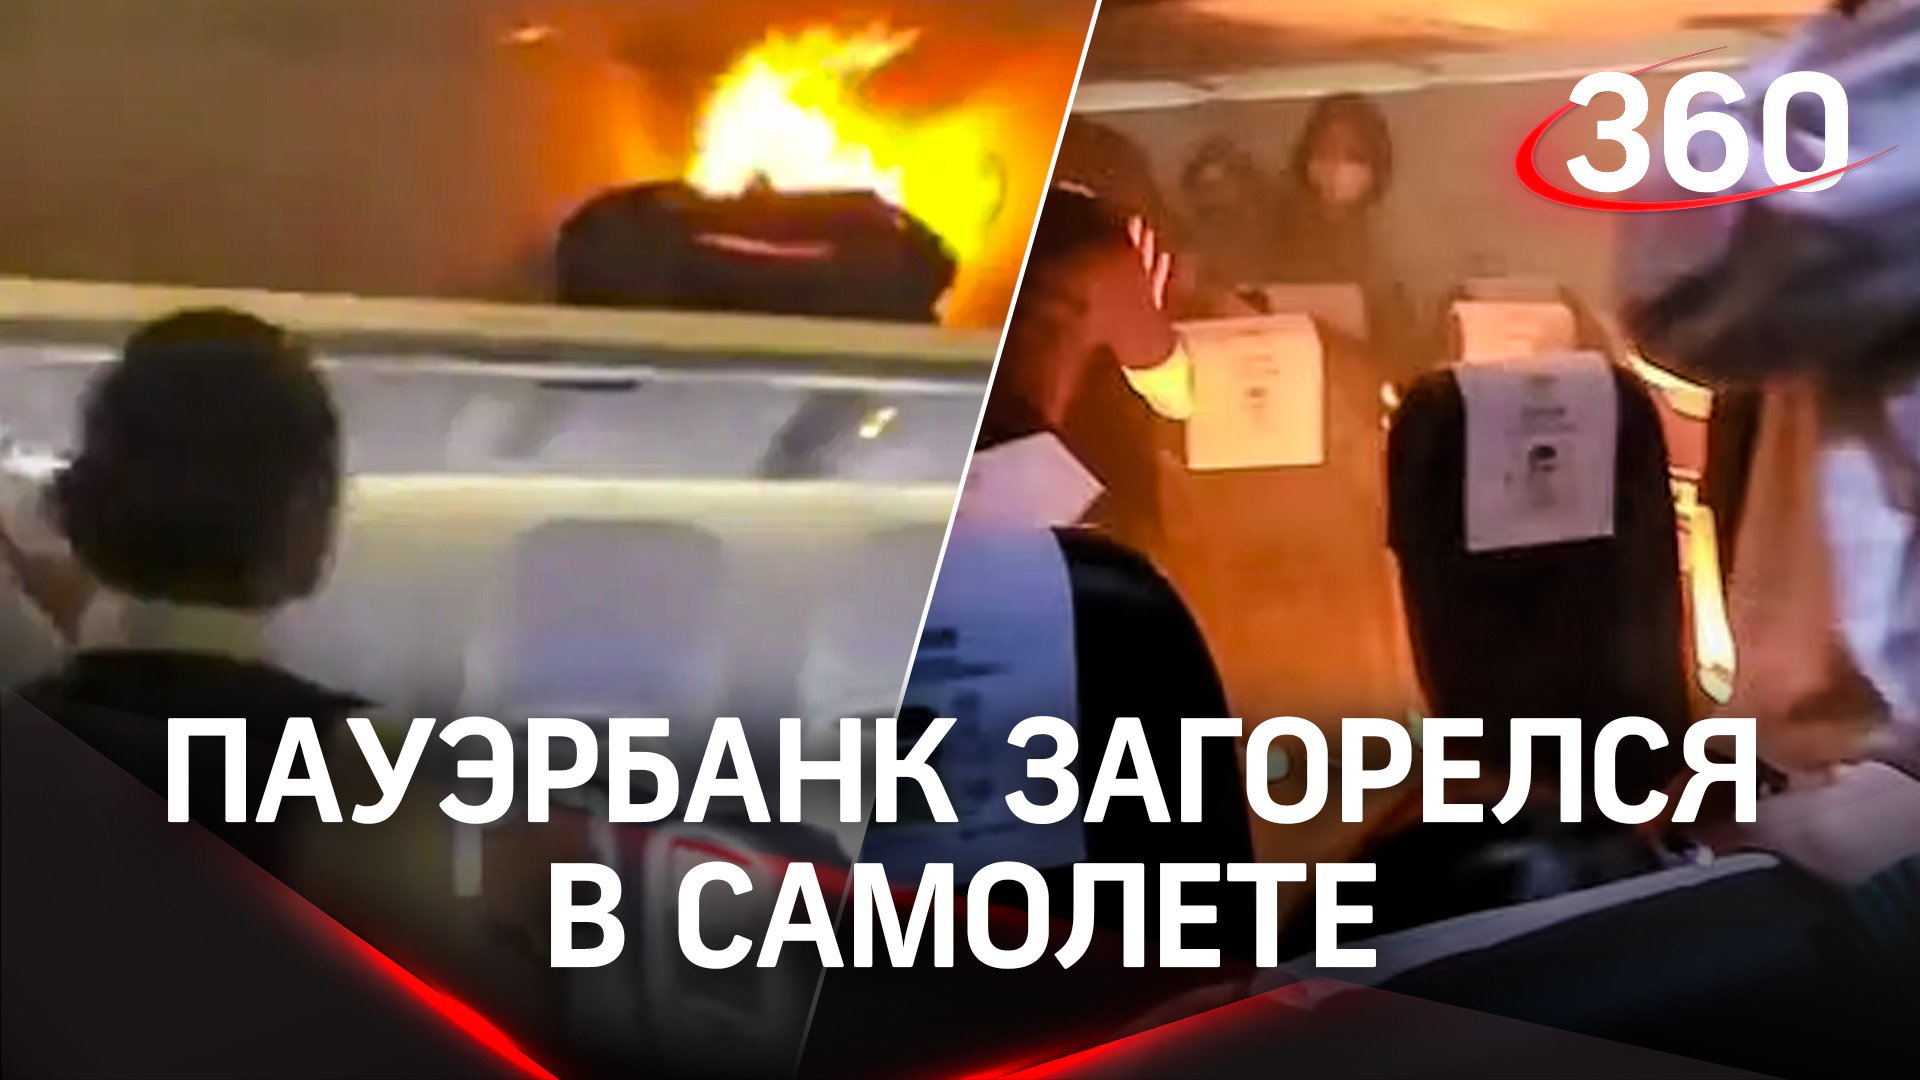 Пауэрбанк загорелся в самолете - два пассажира с ожогами